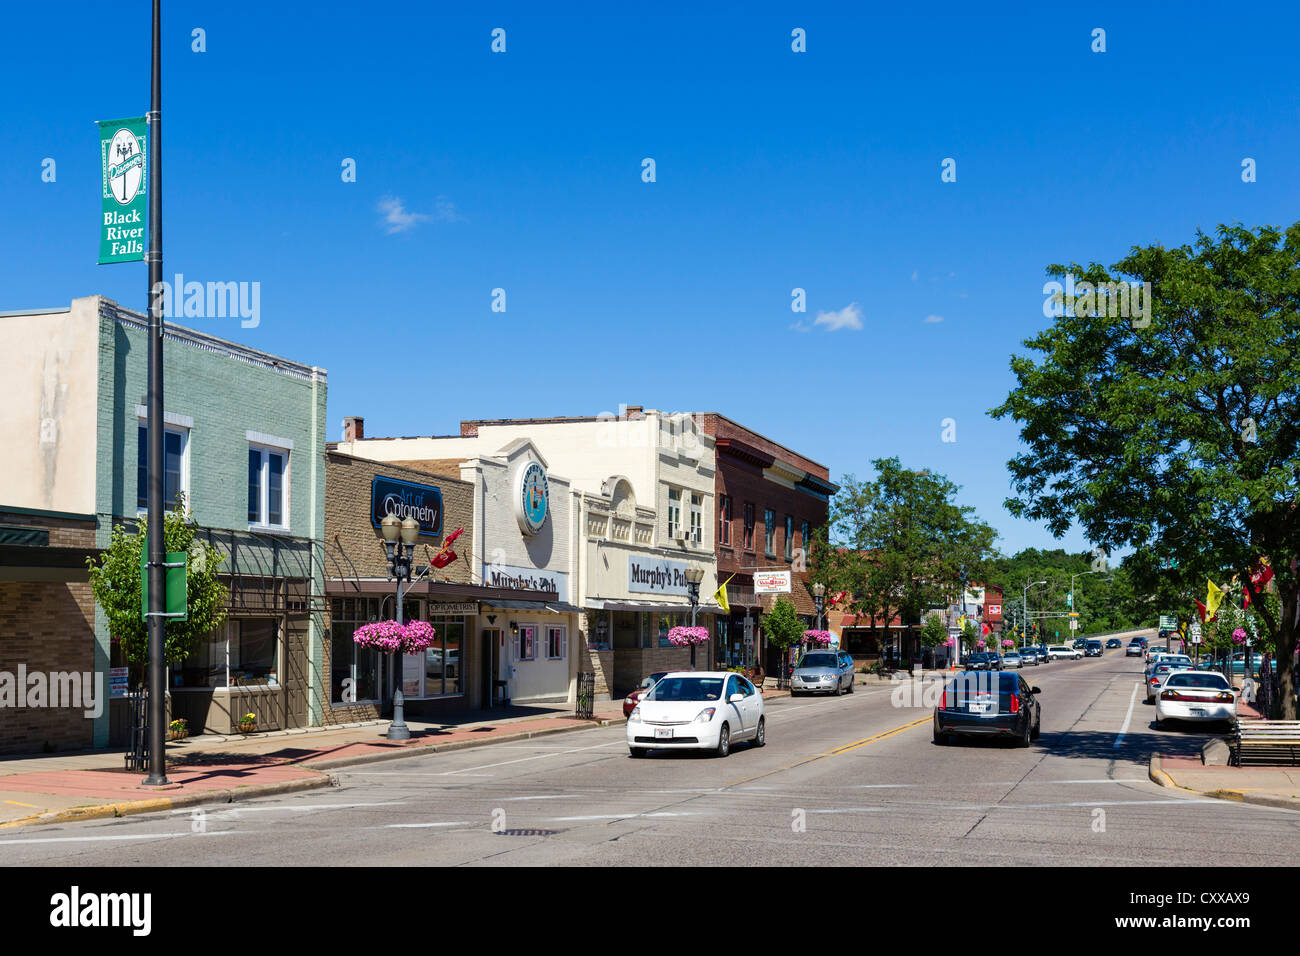 Traditionelle Main Street in einer amerikanischen Kleinstadt, Black River Falls, Wisconsin, USA Stockfoto